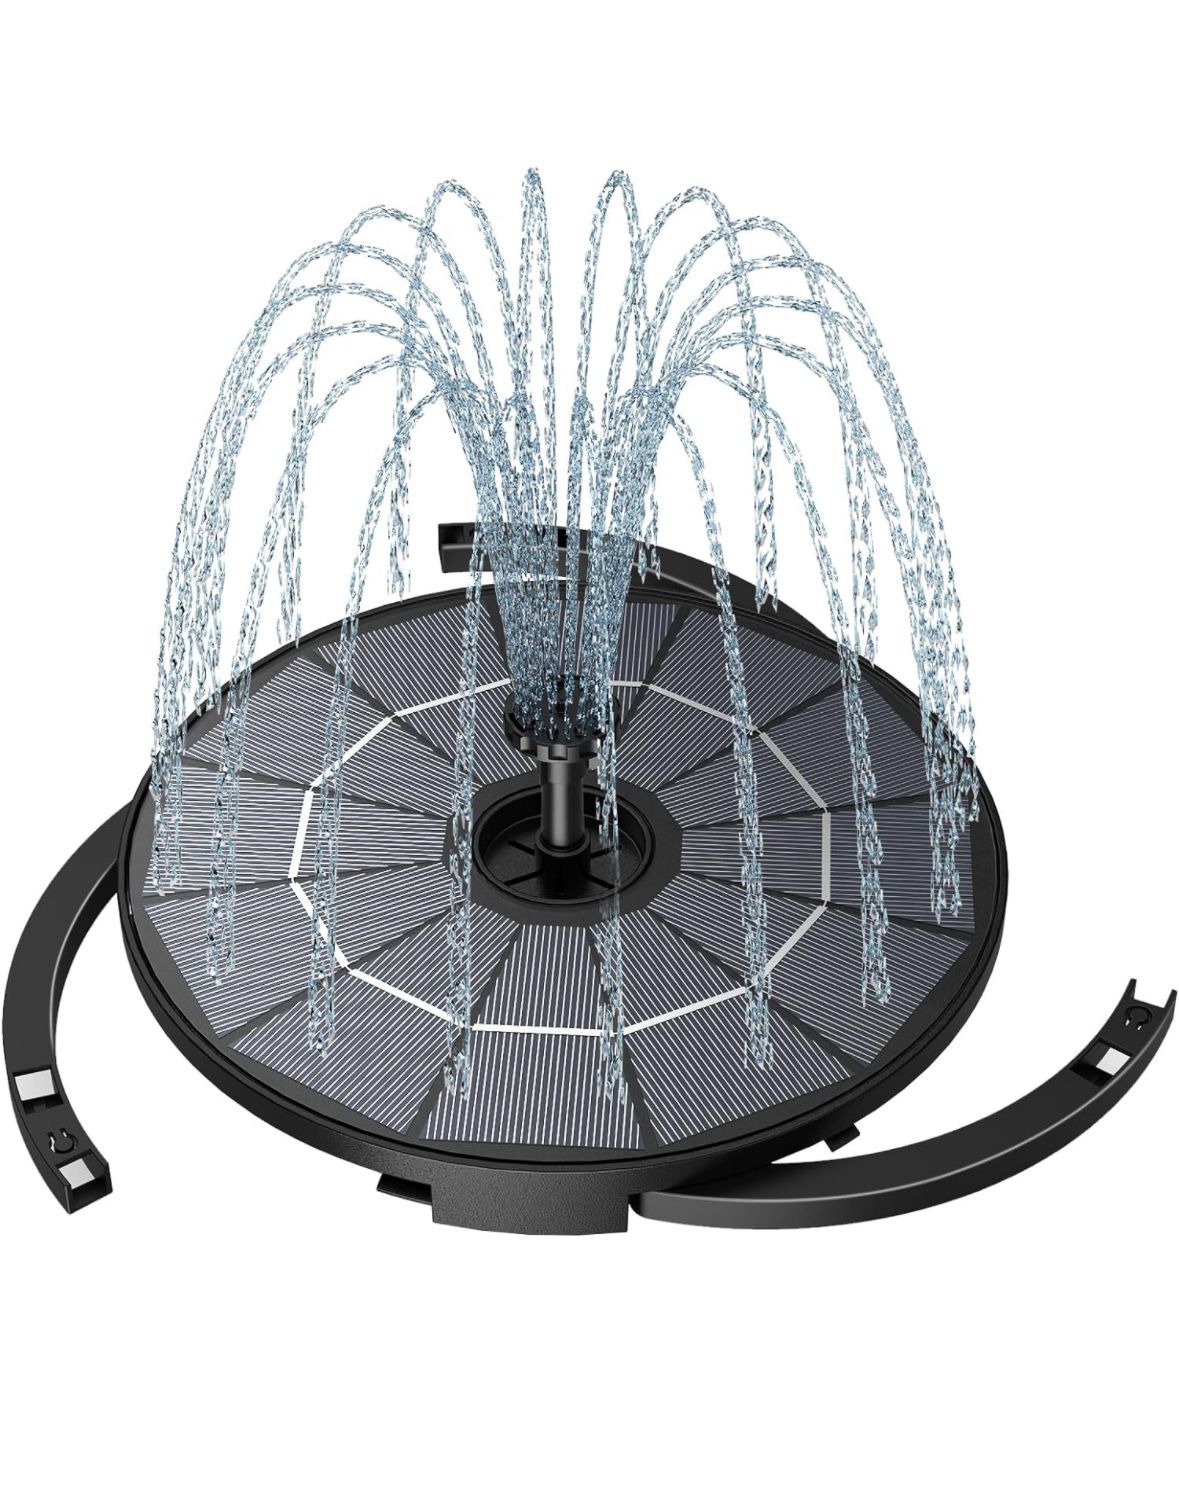 2.8W DIY Solar Fountain with 3.9ft Cord, Solar Bird Bath Fountain with 6 Nozzles and Bracket, Solar Fountain Pump for Bird Bath, Pool, Garden, Pond an